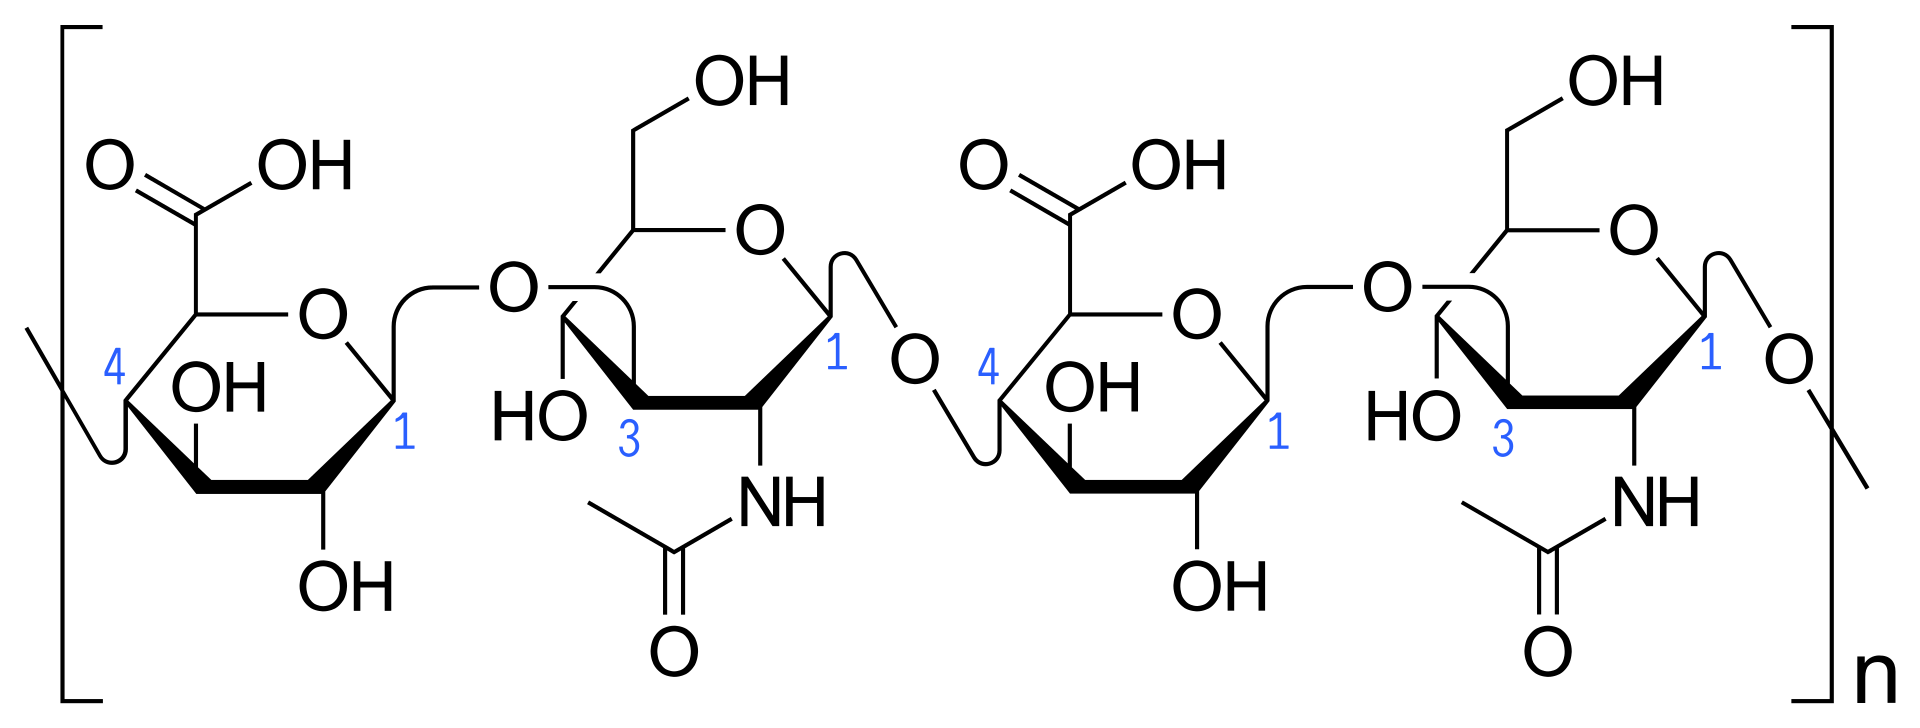 L'unitÃ  disaccaridica che si ripete nella struttura dell'acido ialuronico. 